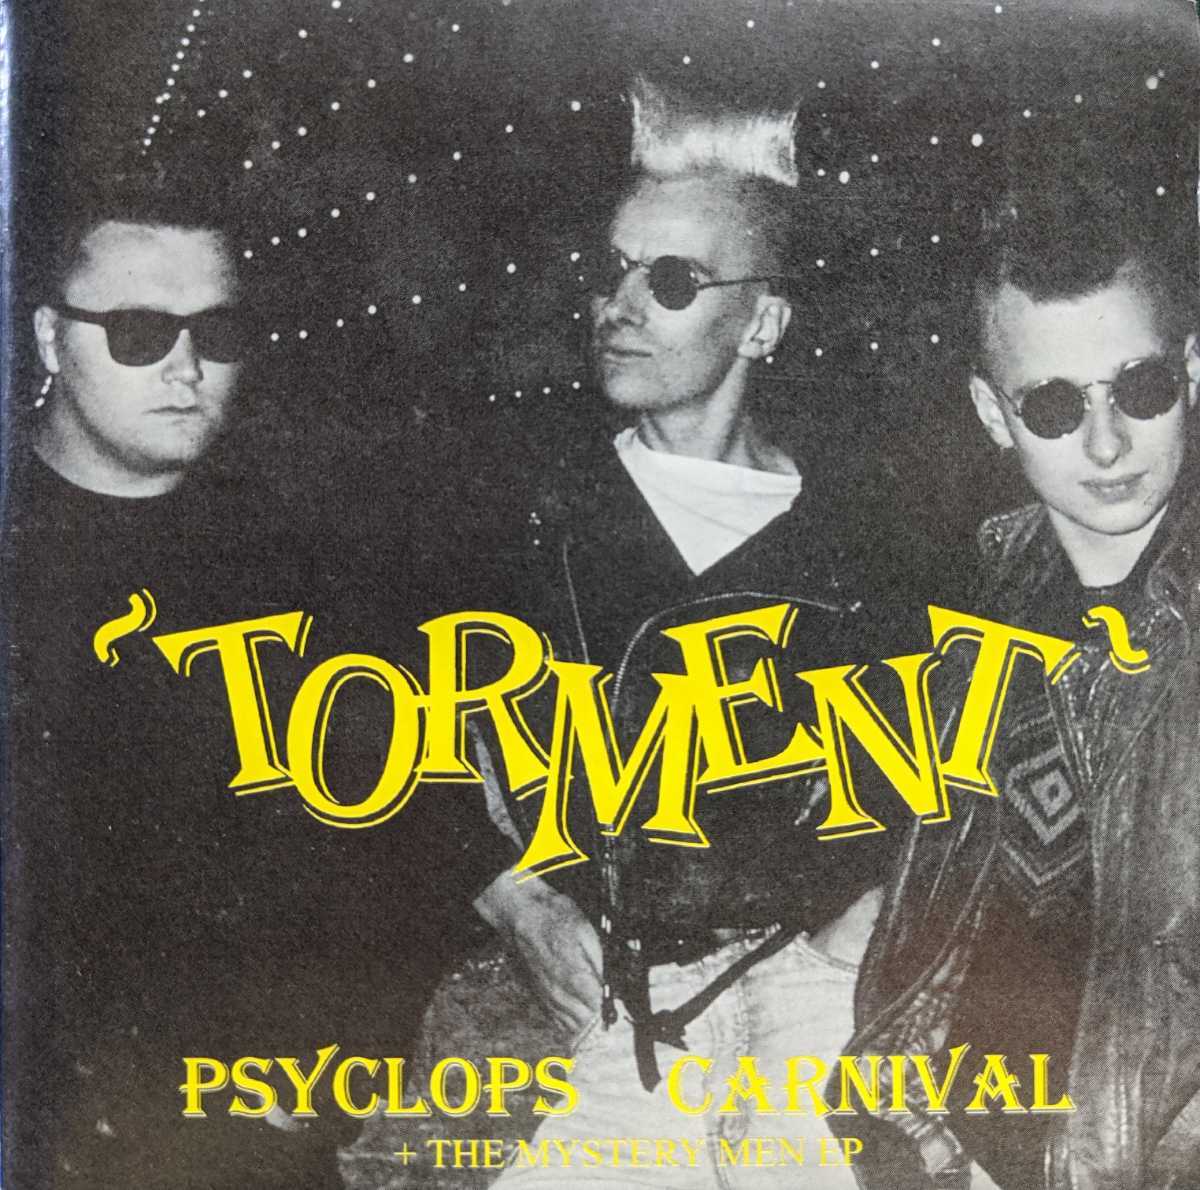 【一部予約販売】 Carnival Psyclops / Y2-9【2in1CD】Torment / サイコビリー / トーメント / 4024572115234 / CLCD6485 / EP Men Mystery The 一般